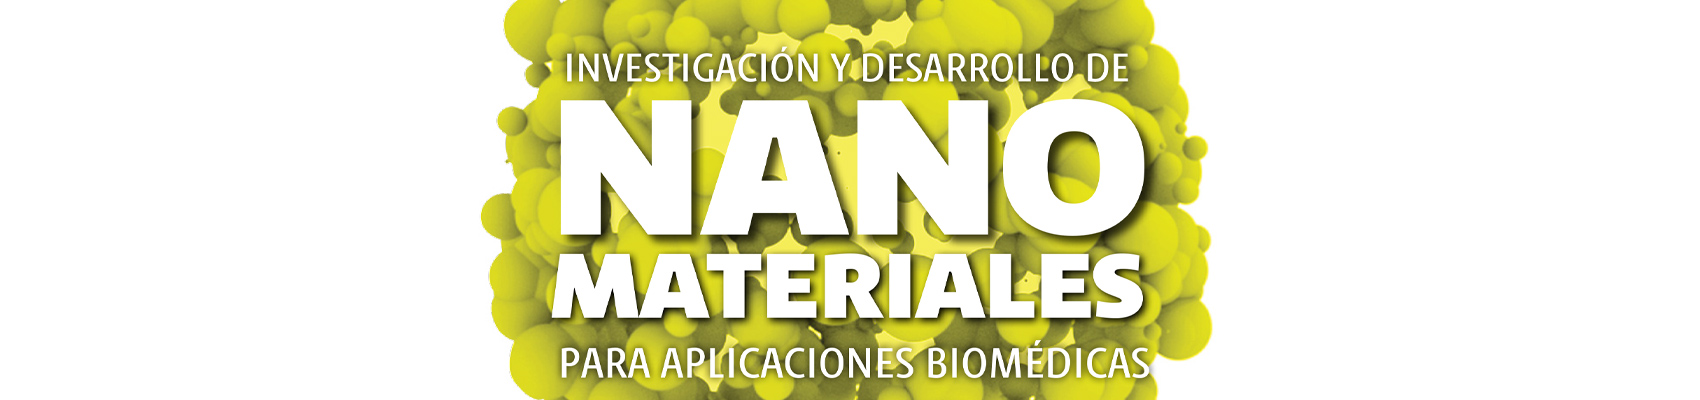 Investigación y desarrollo de nanomateriales para aplicaciones biomédicas